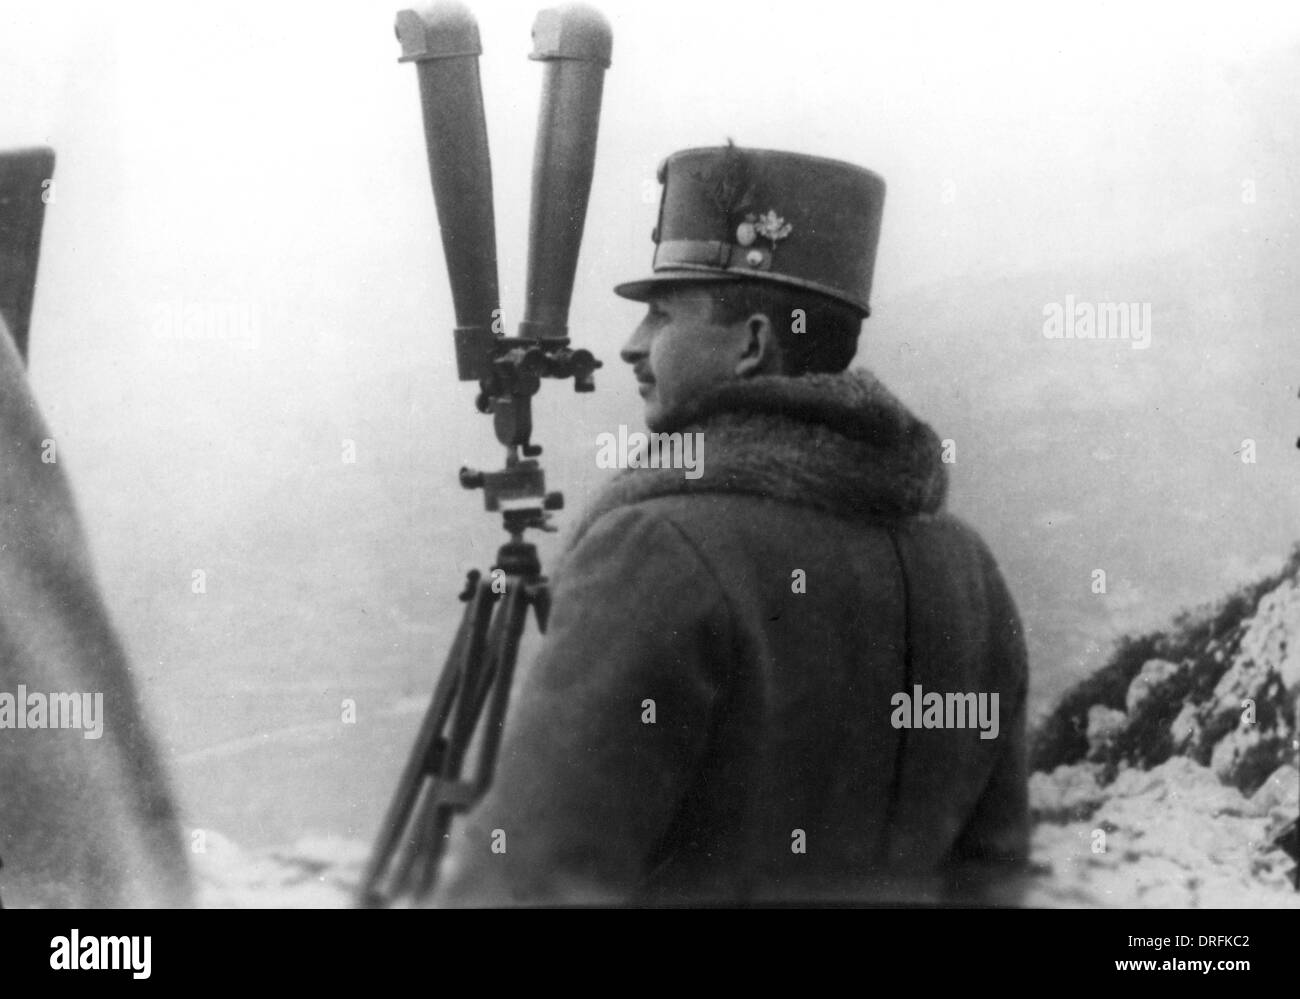 Archduke Karl Franz Josef of Austria with telescope, WW1 Stock Photo